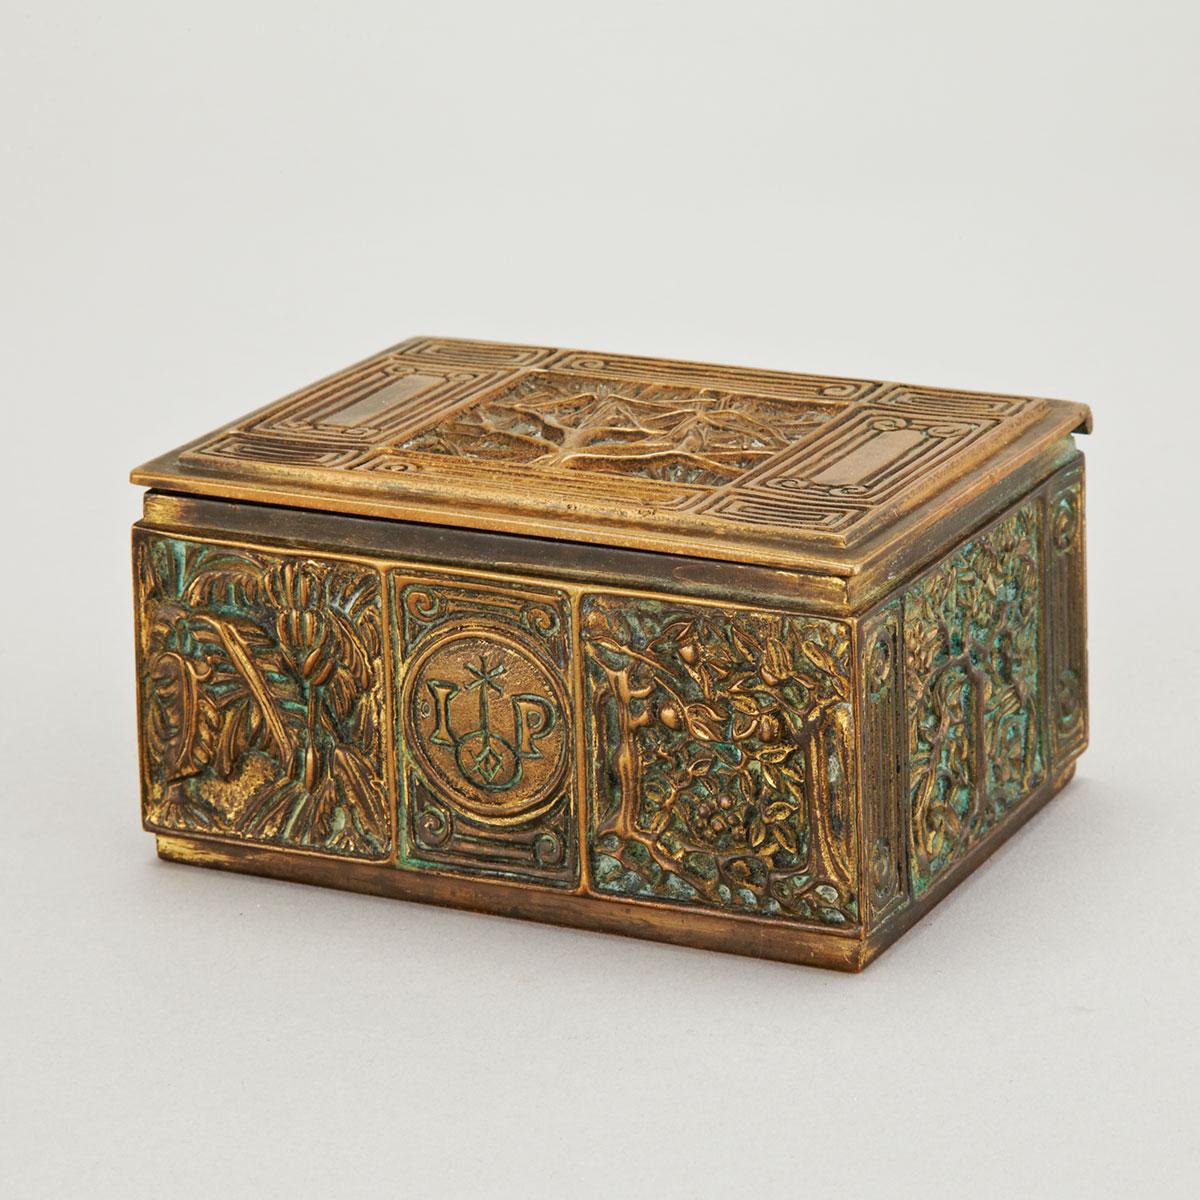 Tiffany Studios ‘Bookmark’ Pattern Gilt Bronze Cigarette Box, c.1906